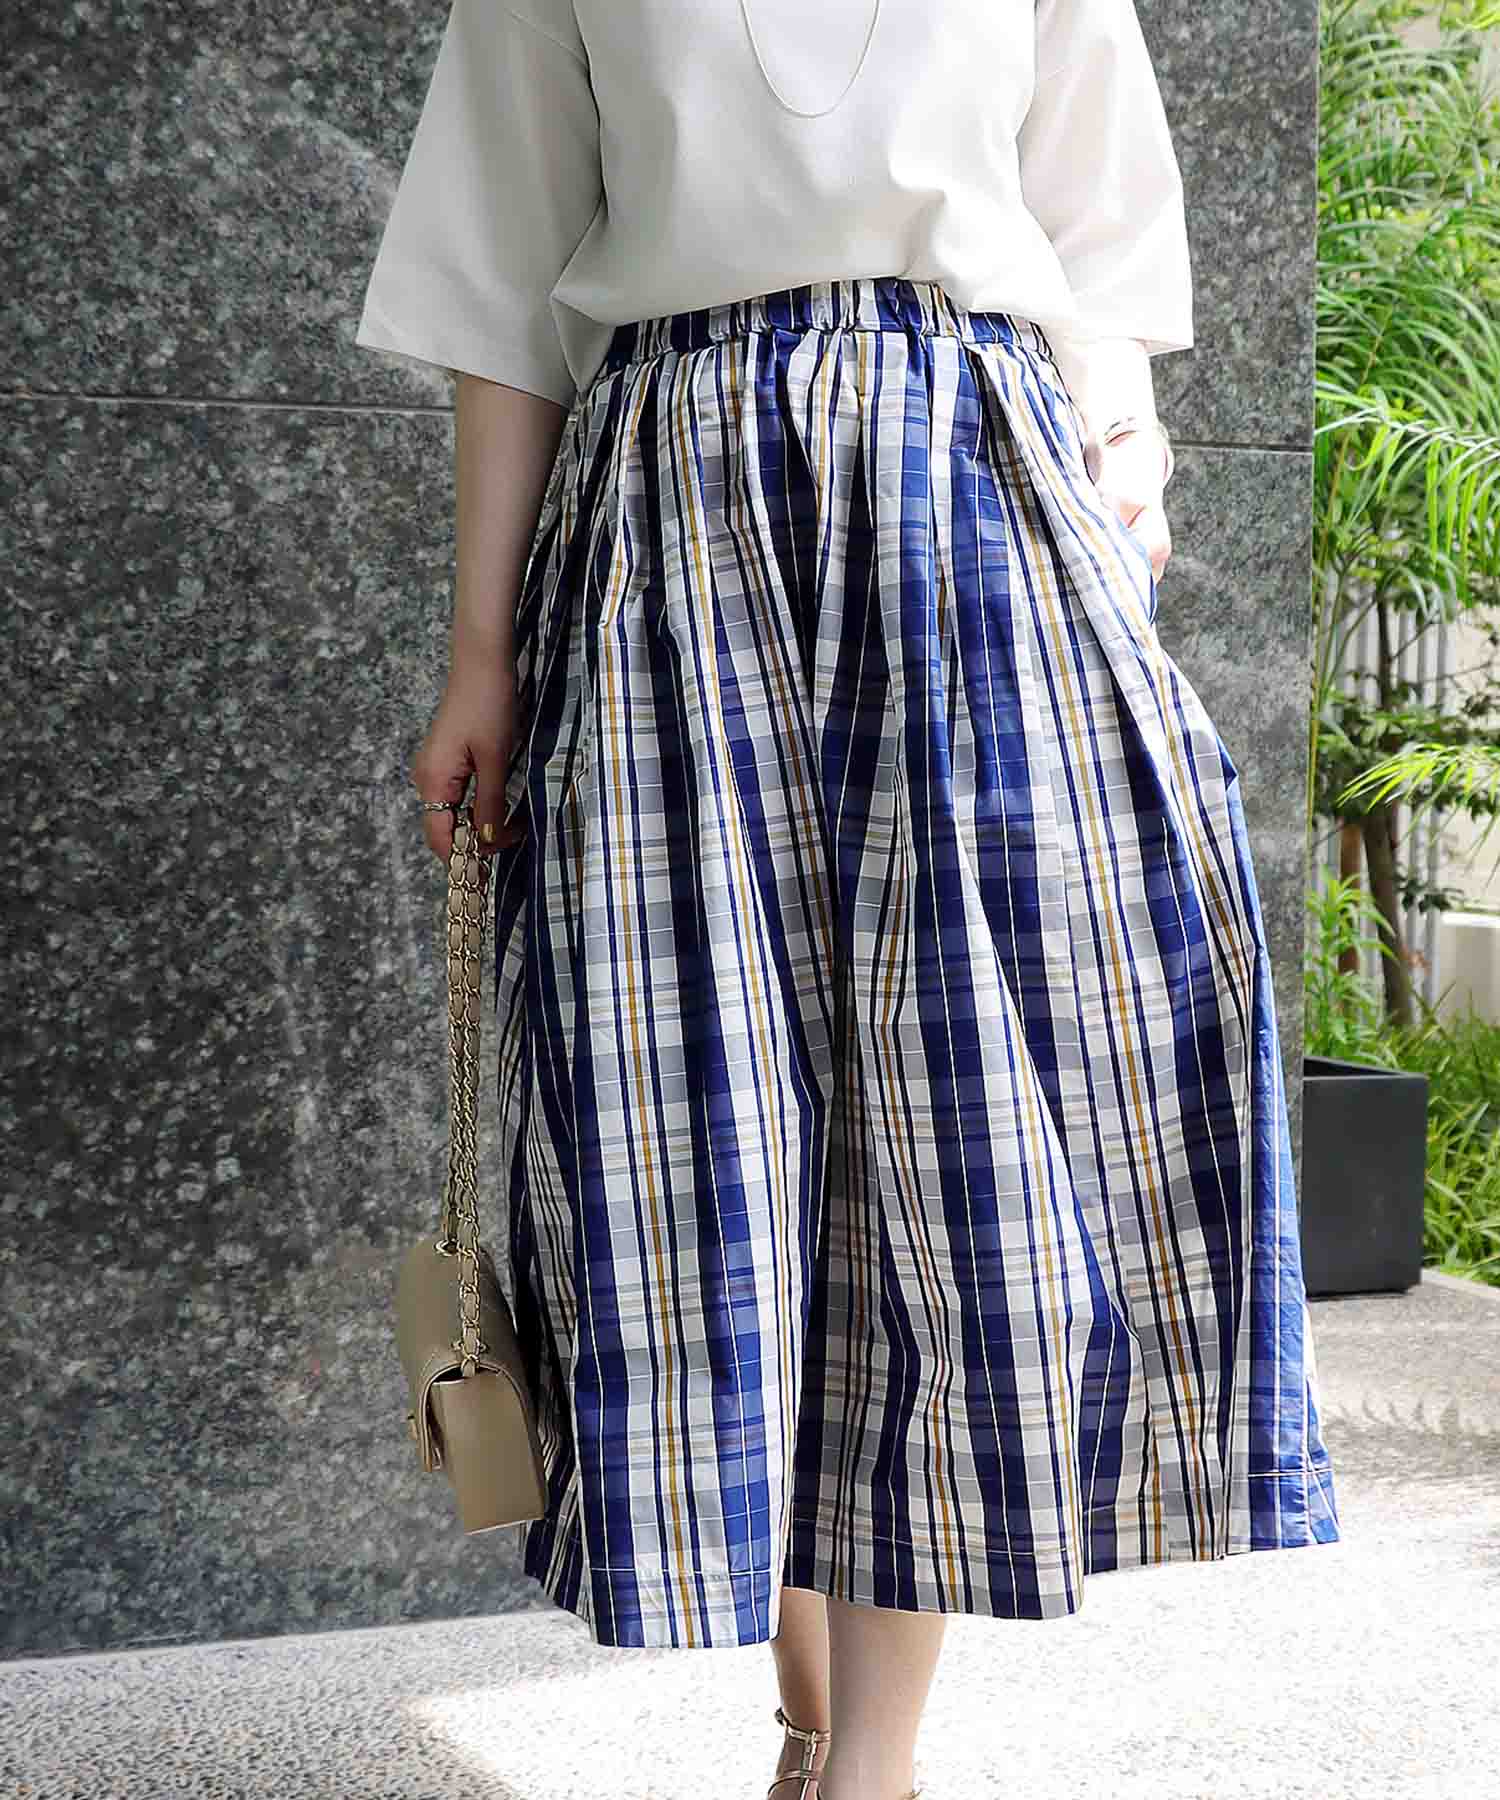 BALENCIAGA】シェパード/グレン/チェック 裾プレス痕 スカート - スカート